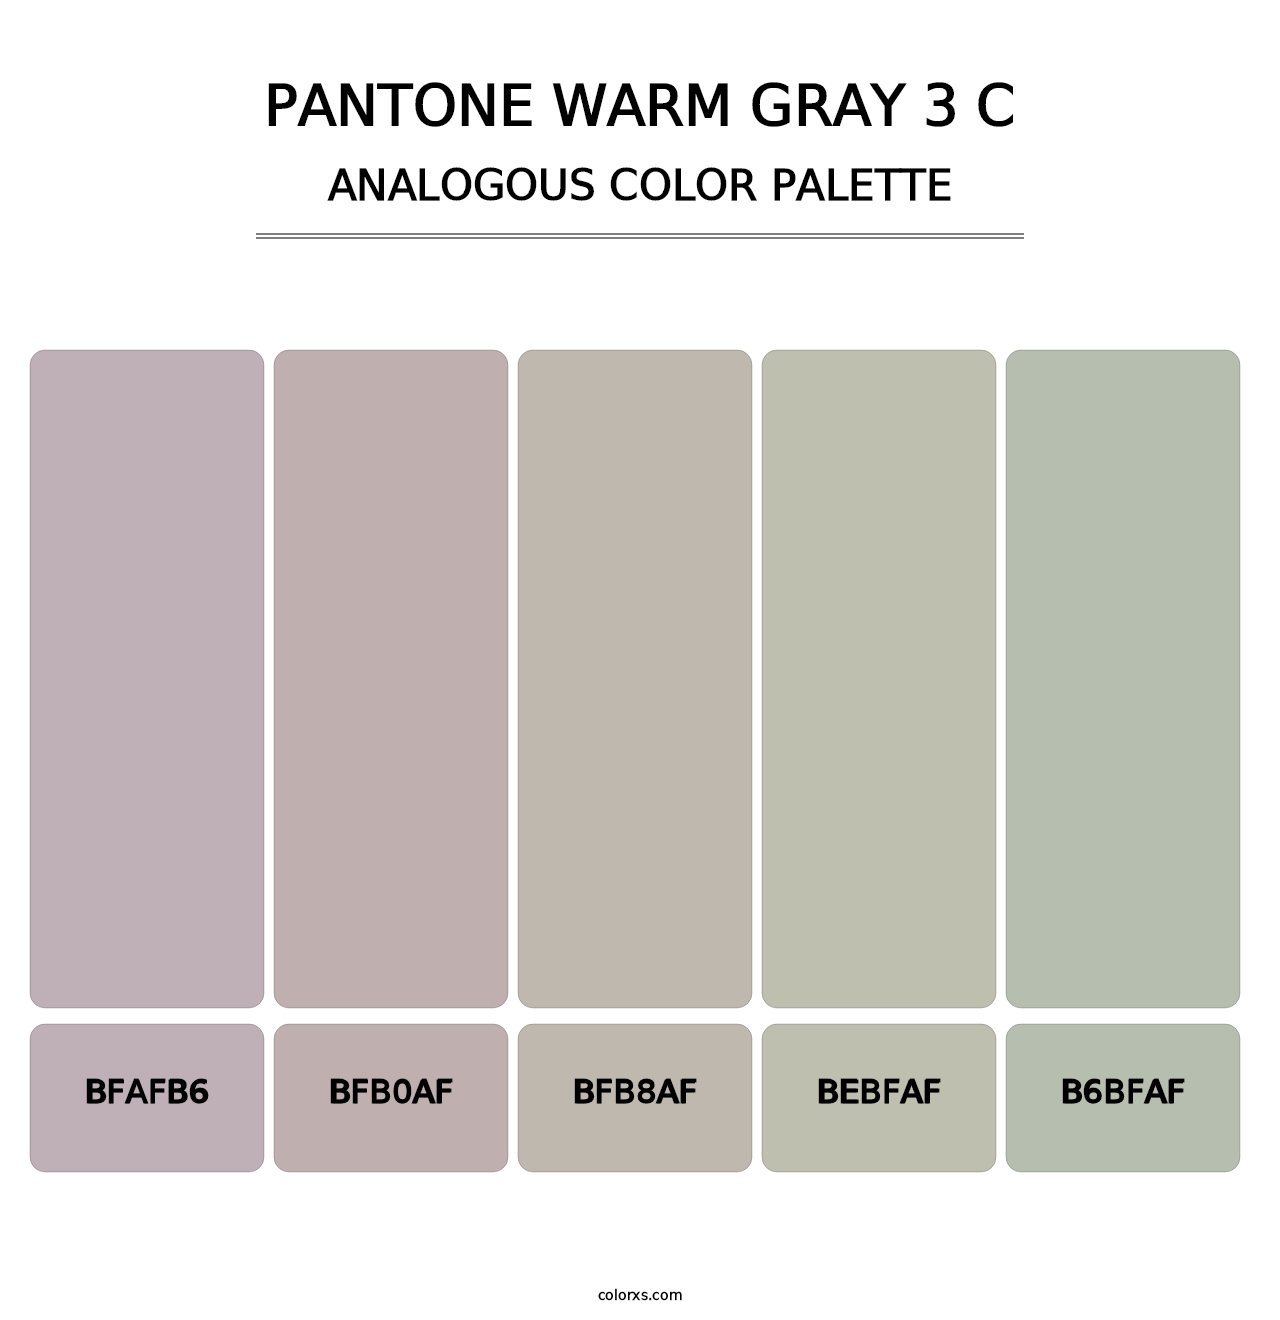 PANTONE Warm Gray 3 C - Analogous Color Palette